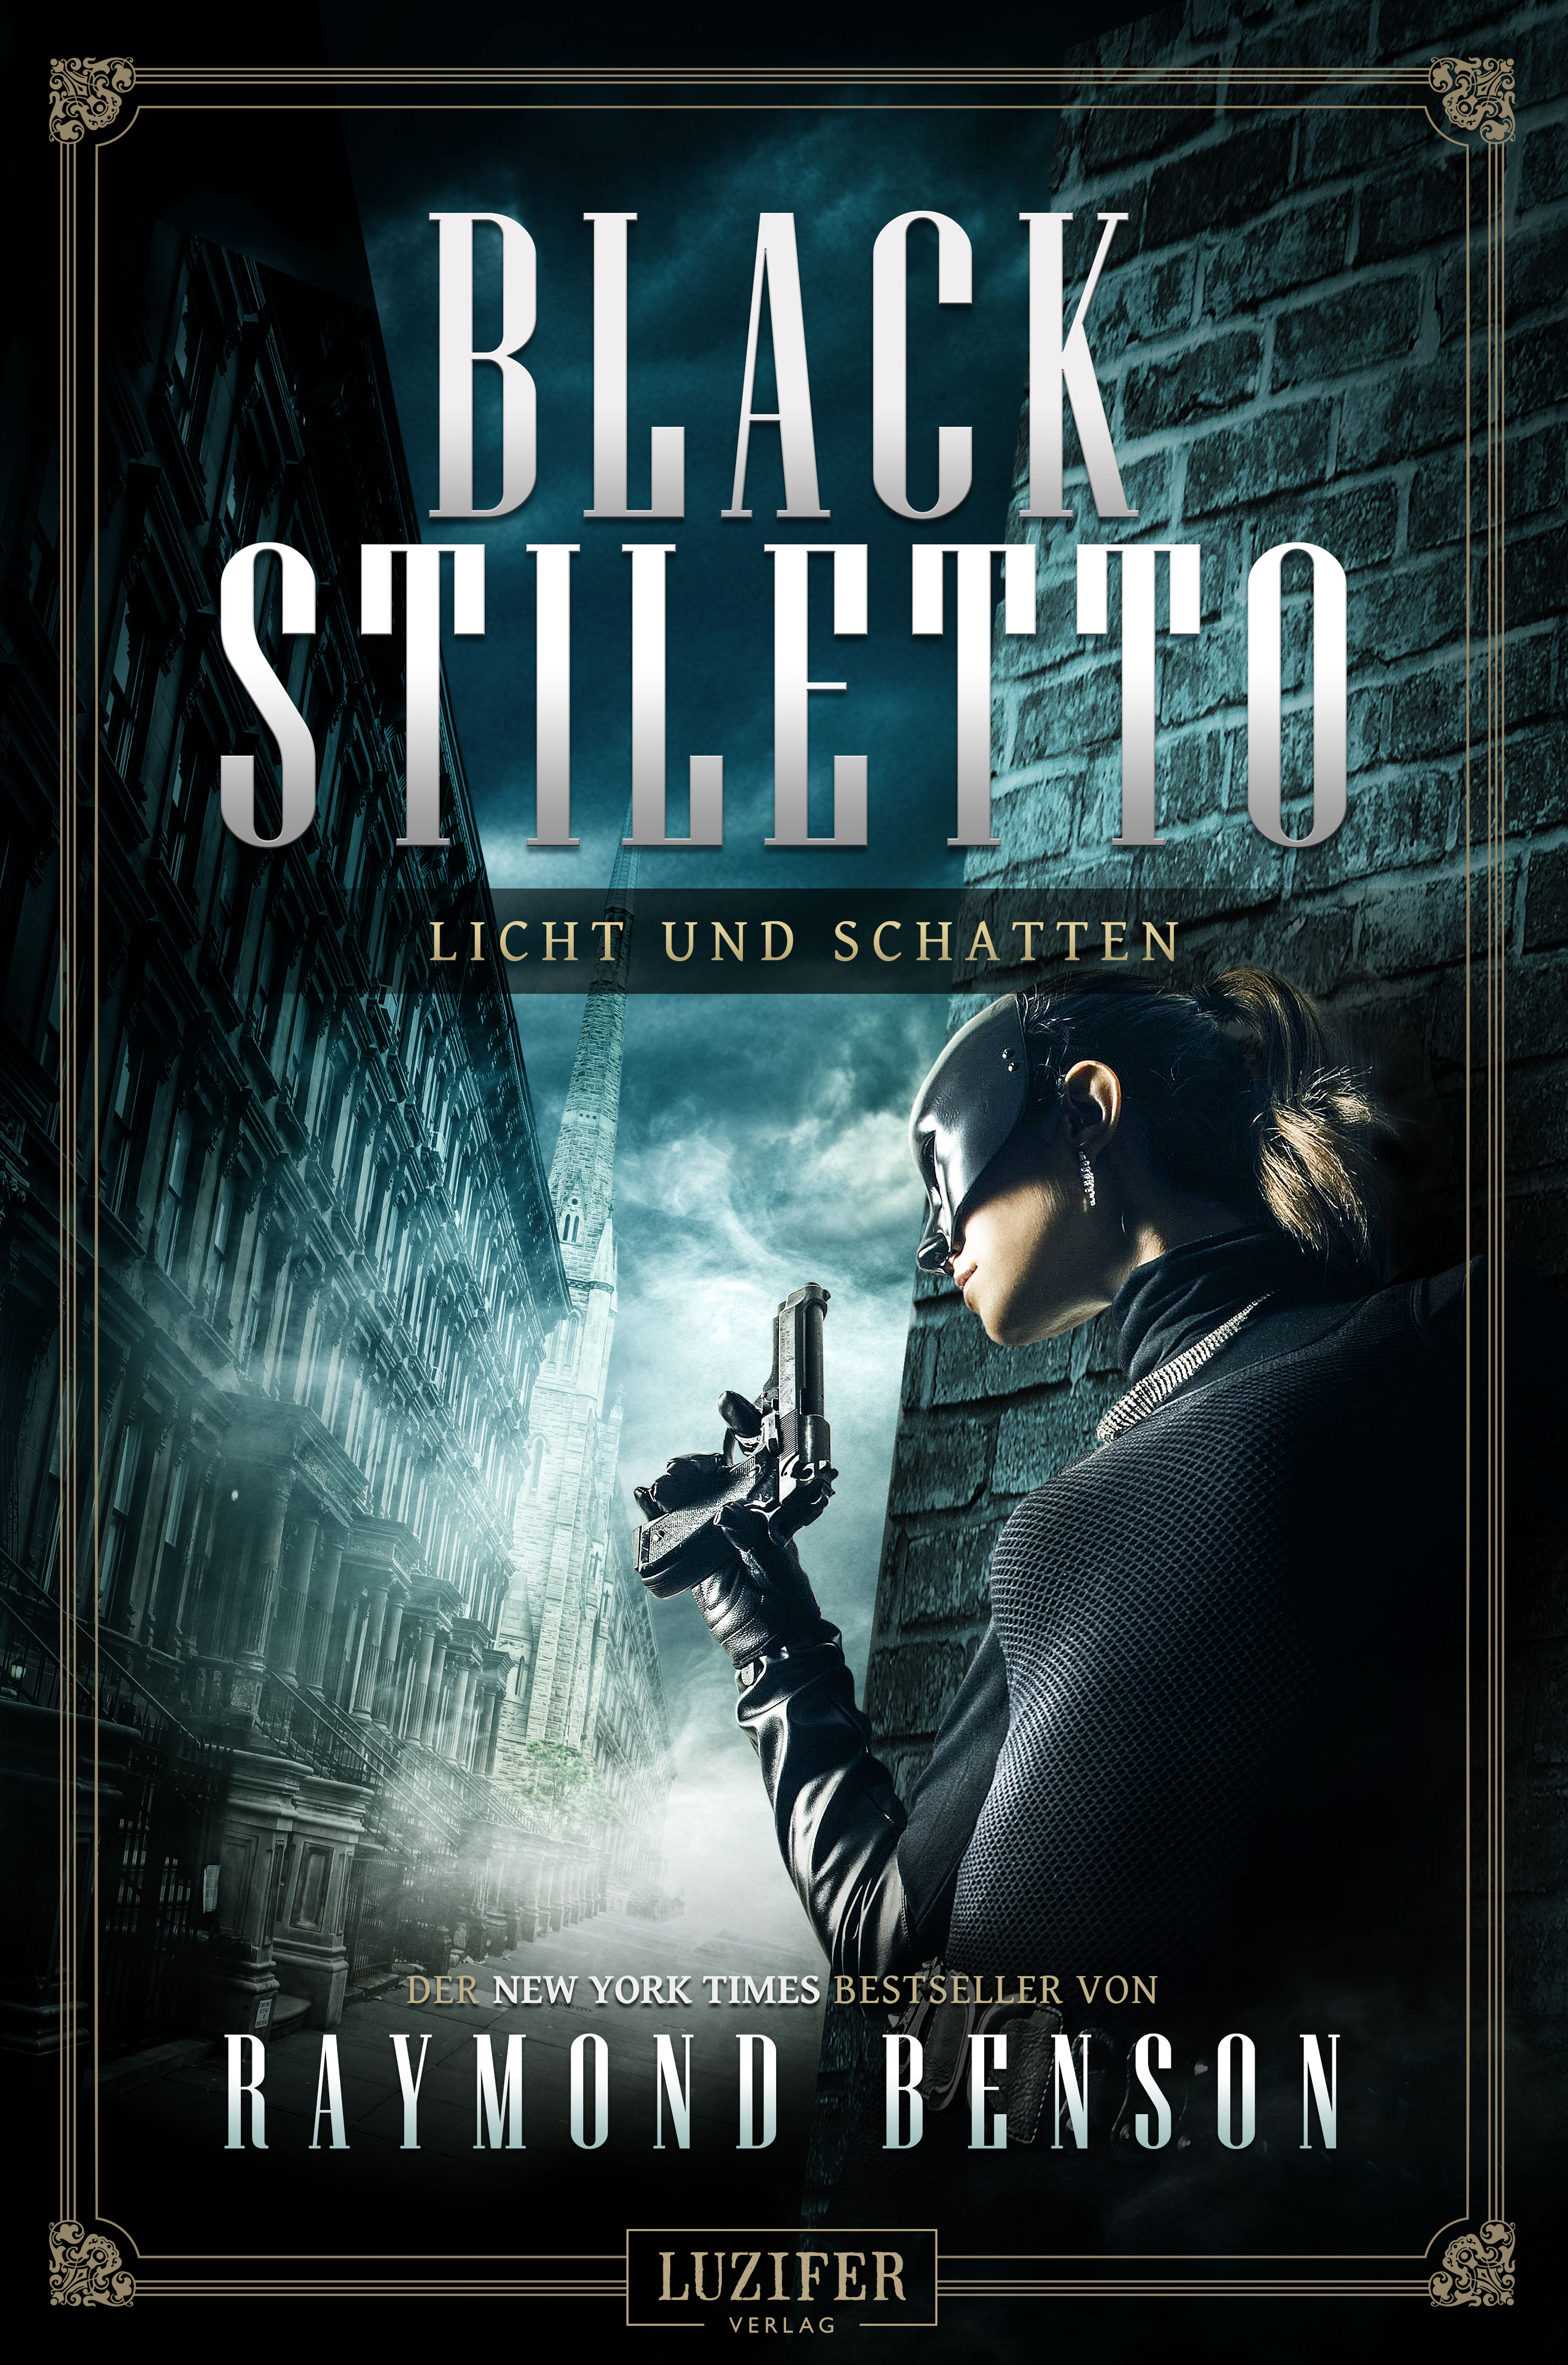 The Black Stiletto 2 German Edition Cover